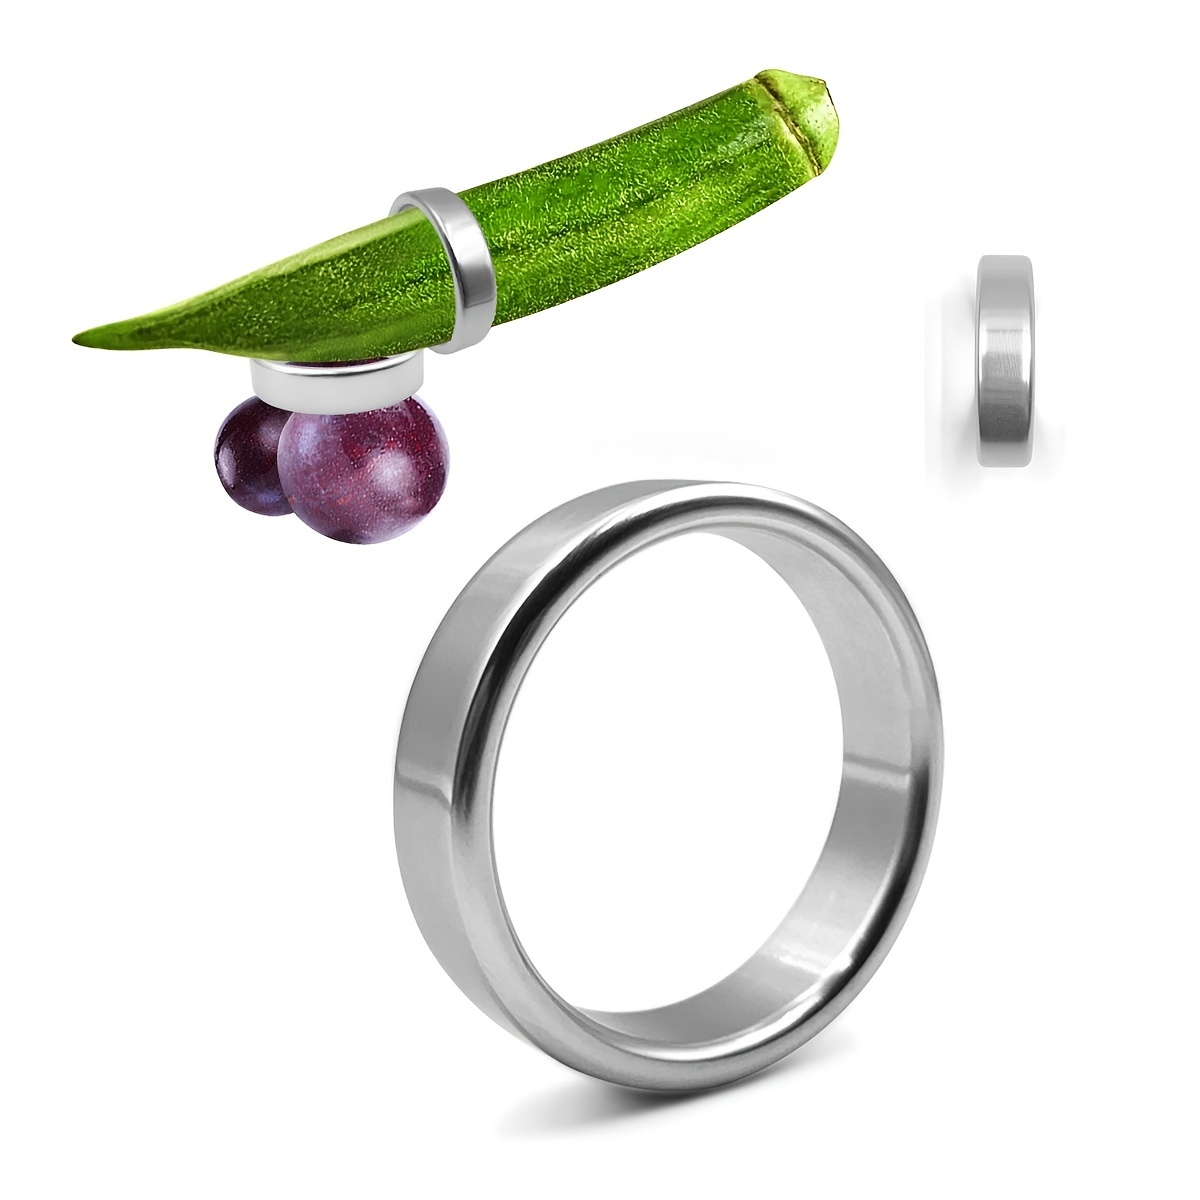  Anillo de pene para hombre para sexo anillos de pene para  pareja sexual, pene de silicona para erección, anillo de polla sexual para  parejas, anillos de pene sexuales, anillo de pene